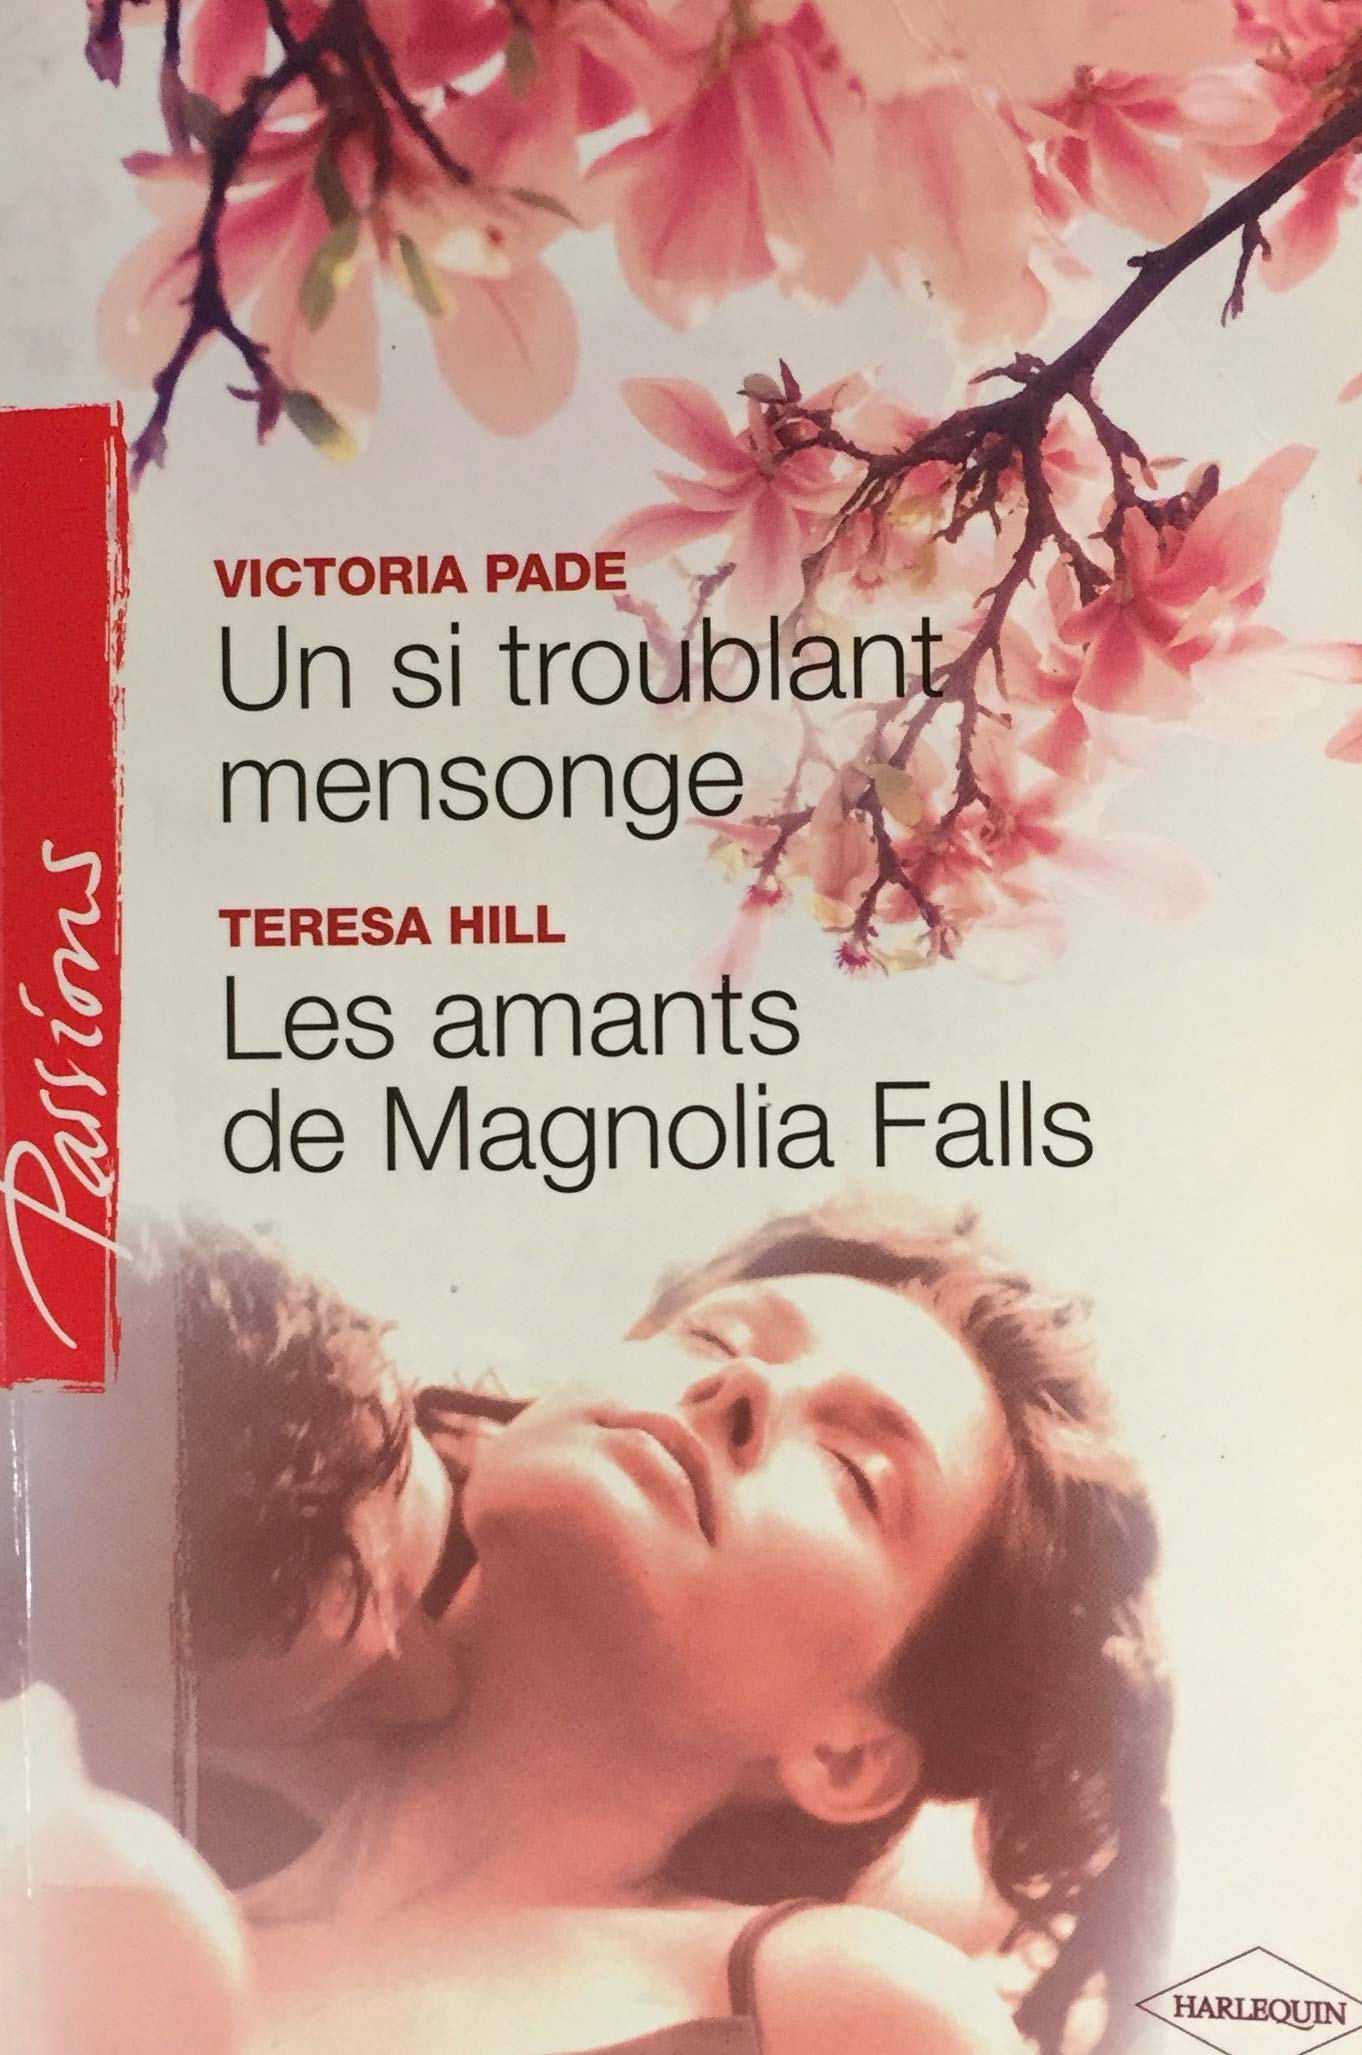 Livre ISBN 0373378742 Passions (Harlequin) : Un si troublant mensonge – Les amants de Magnolia Falls (Victoria Pade)